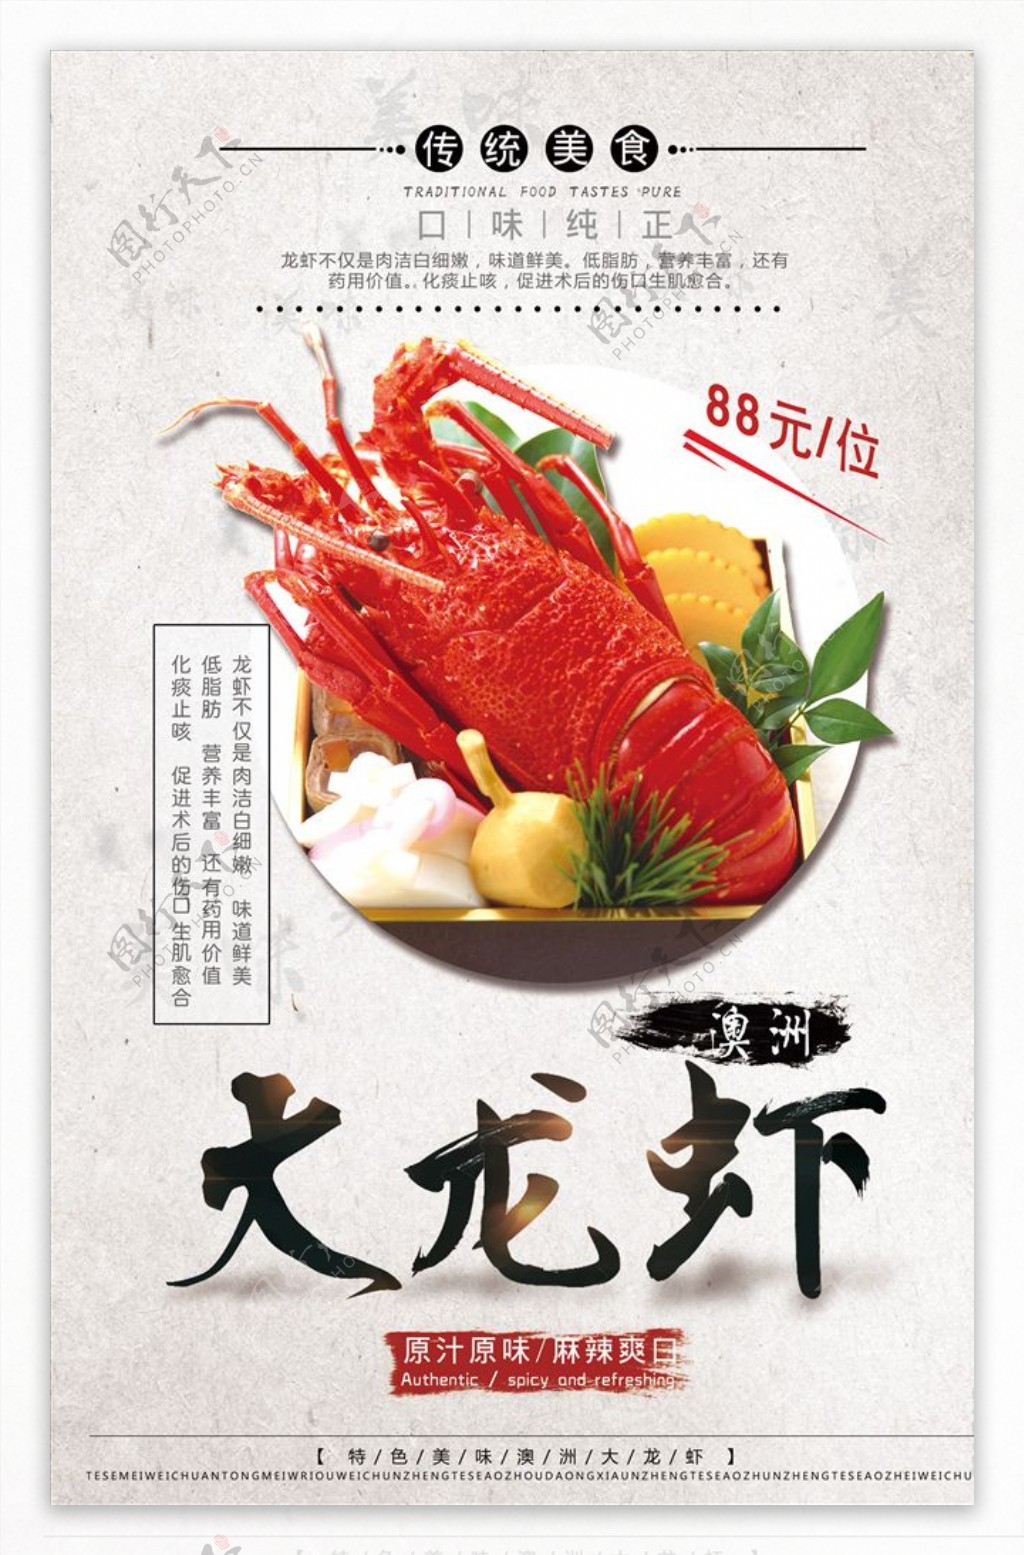 创意澳洲大龙虾海鲜促销海报